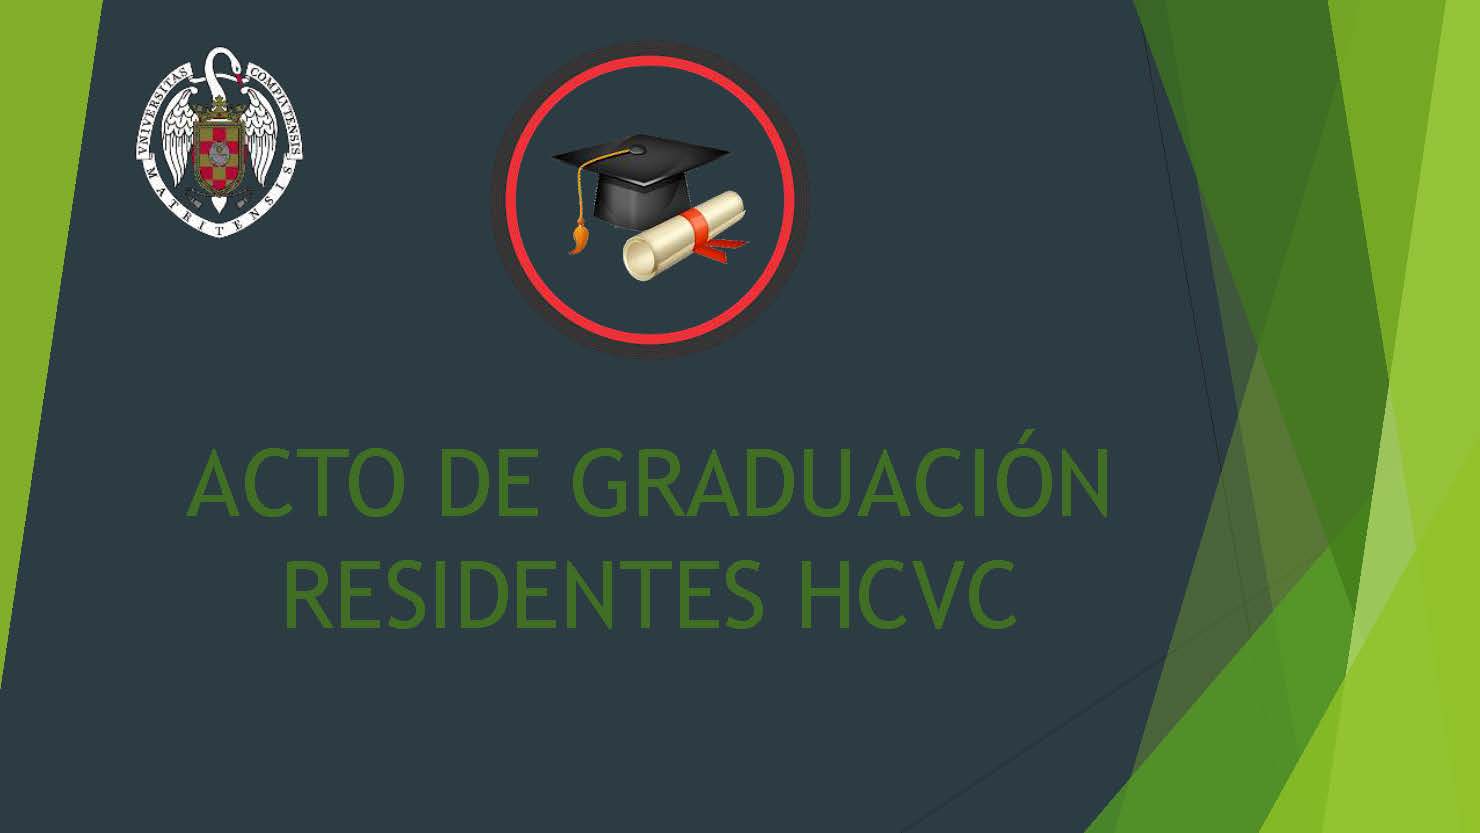 Acto graduación residentes HCVC